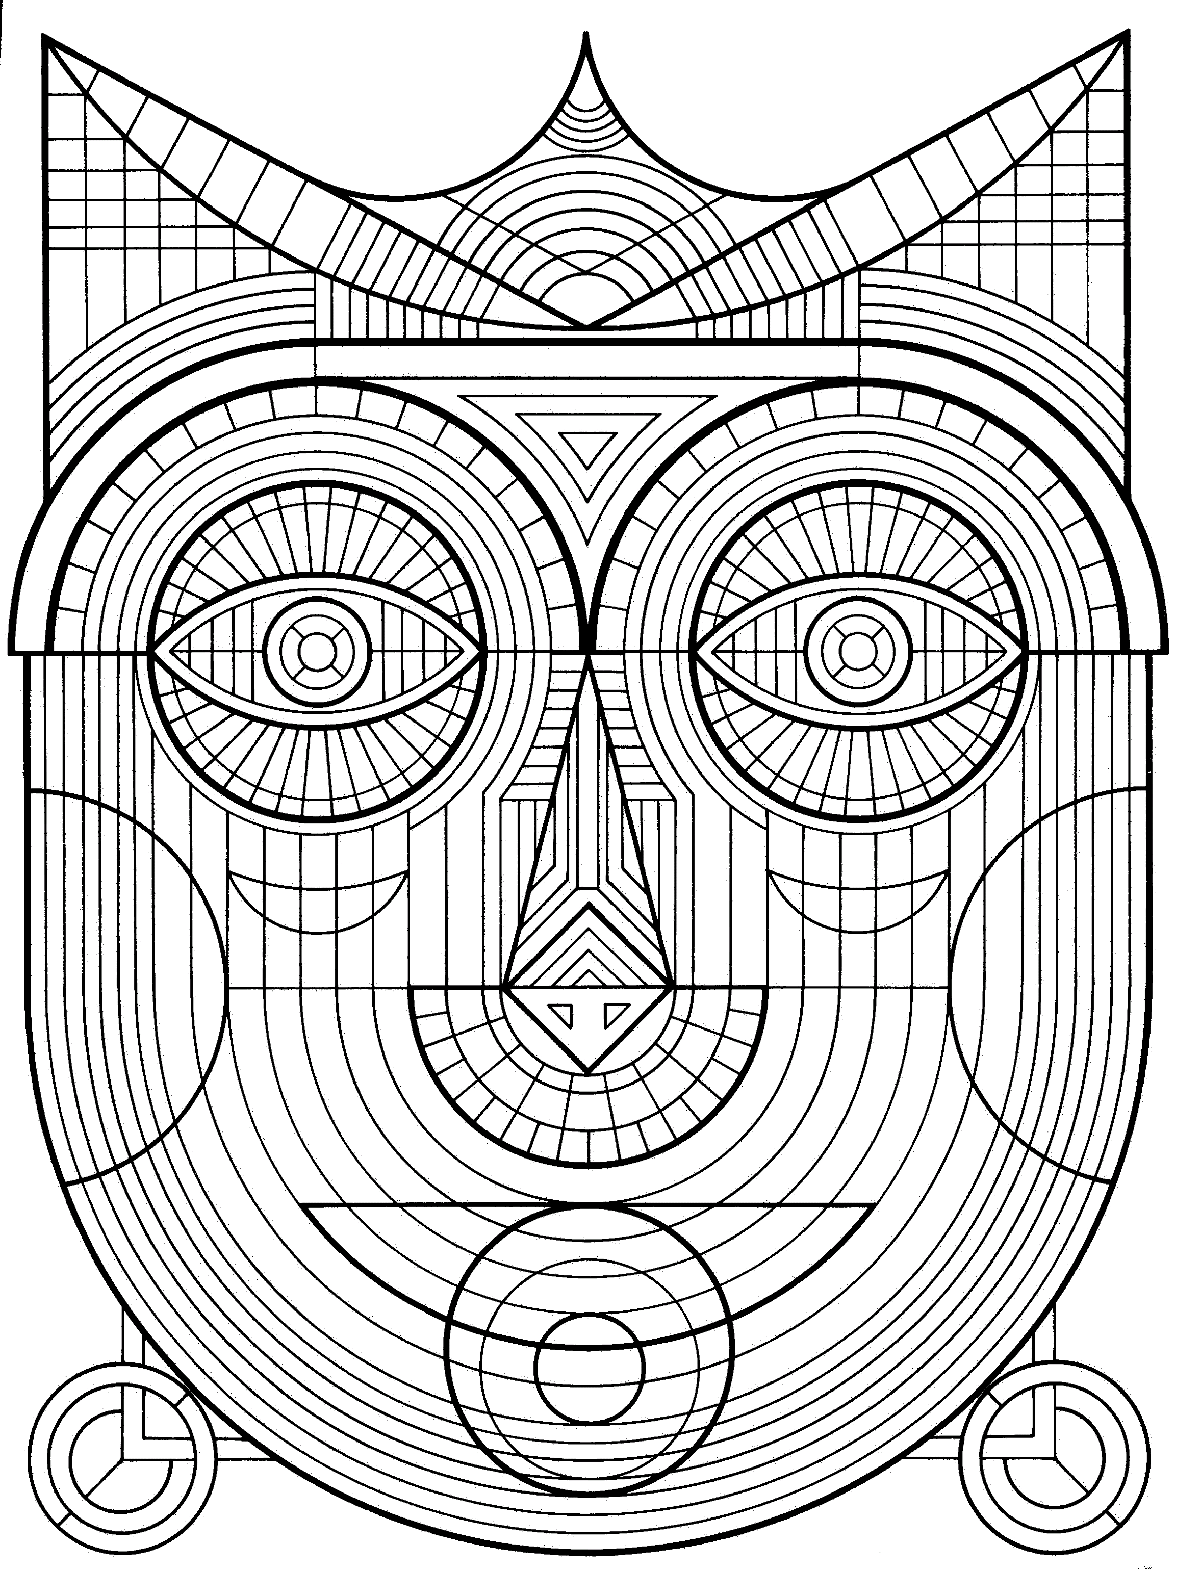 Immagine di una maschera Maya sosia